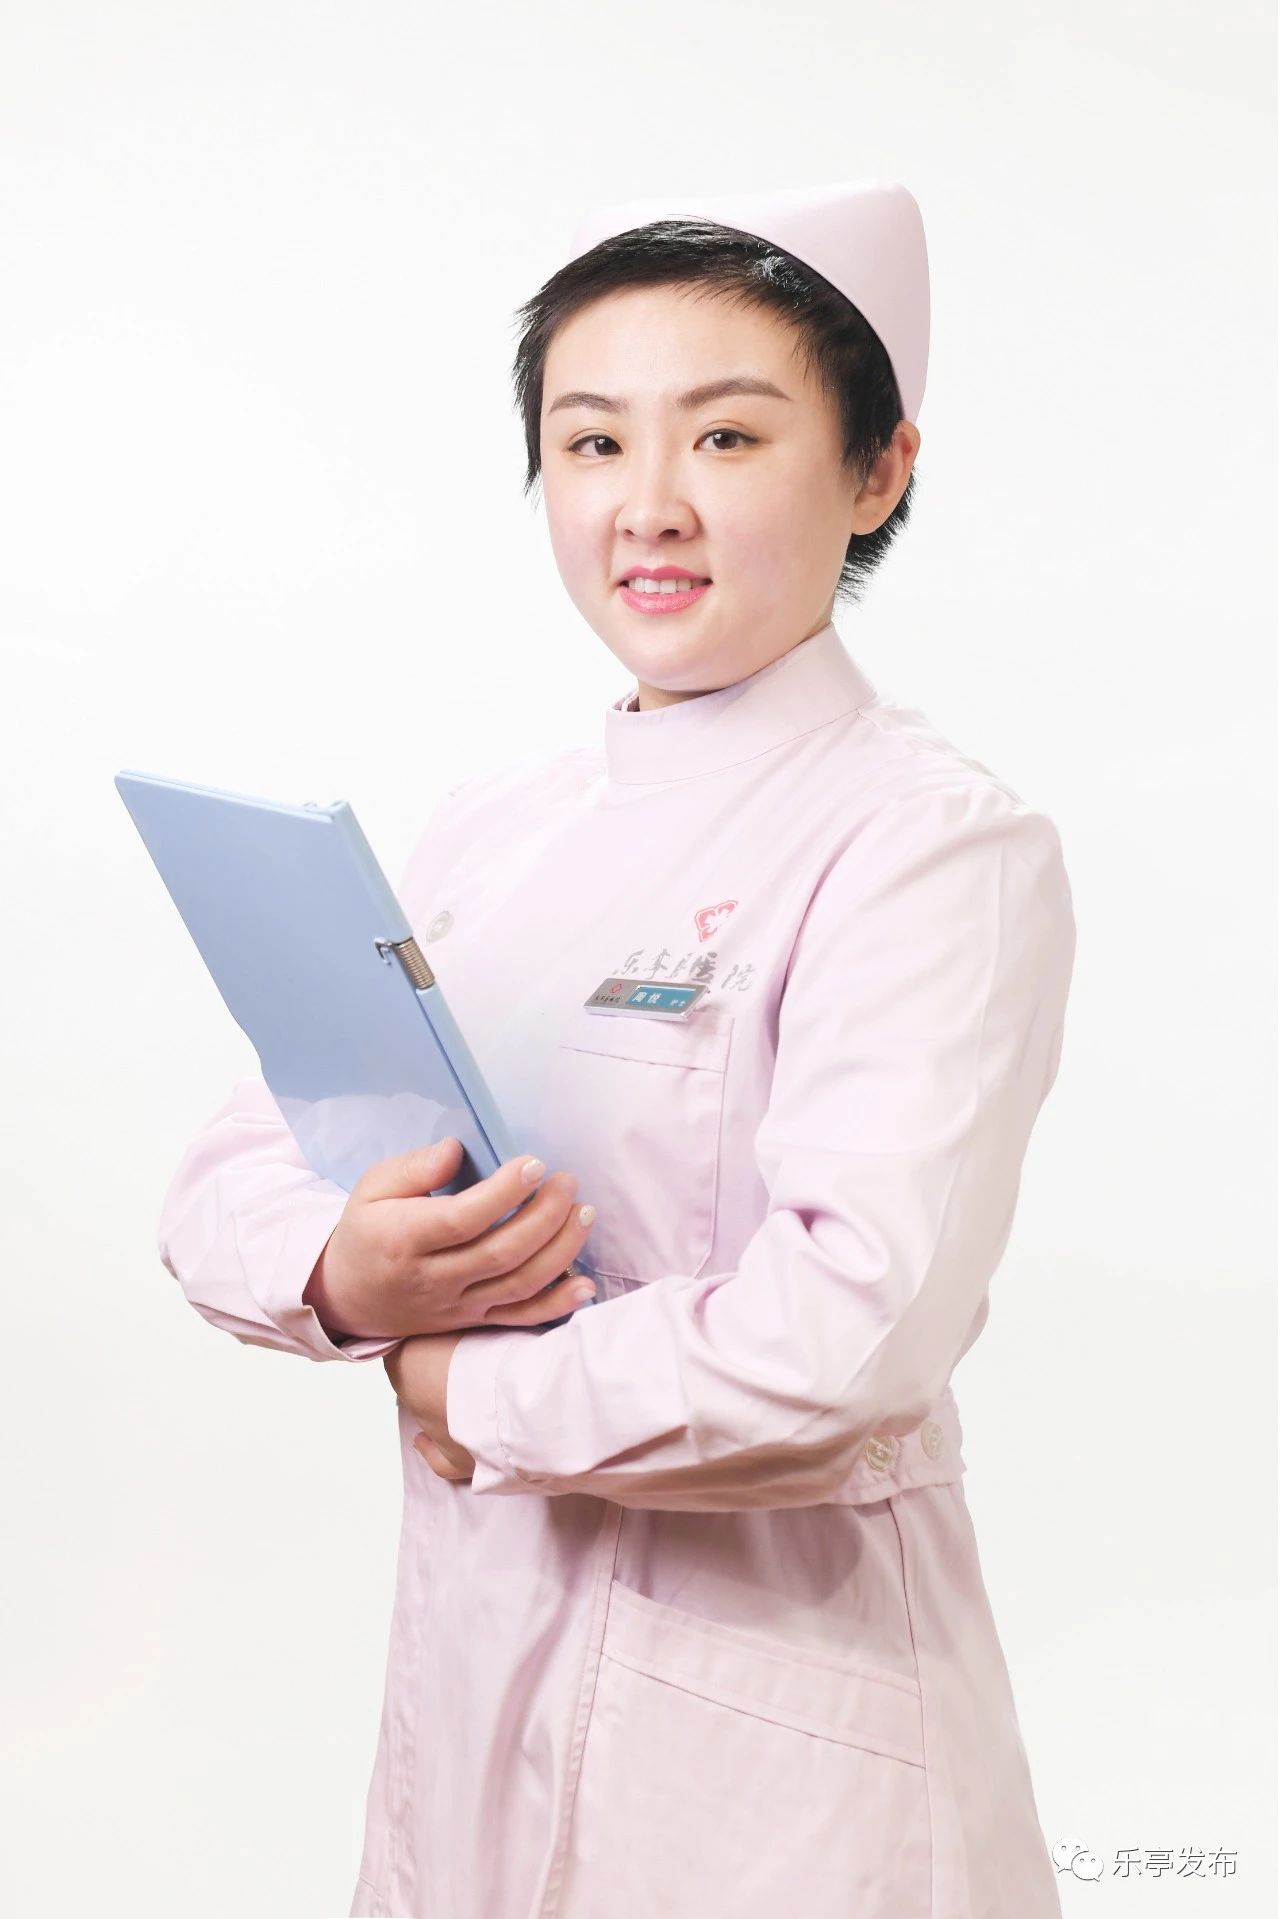 武汉抗疫最美护士图片